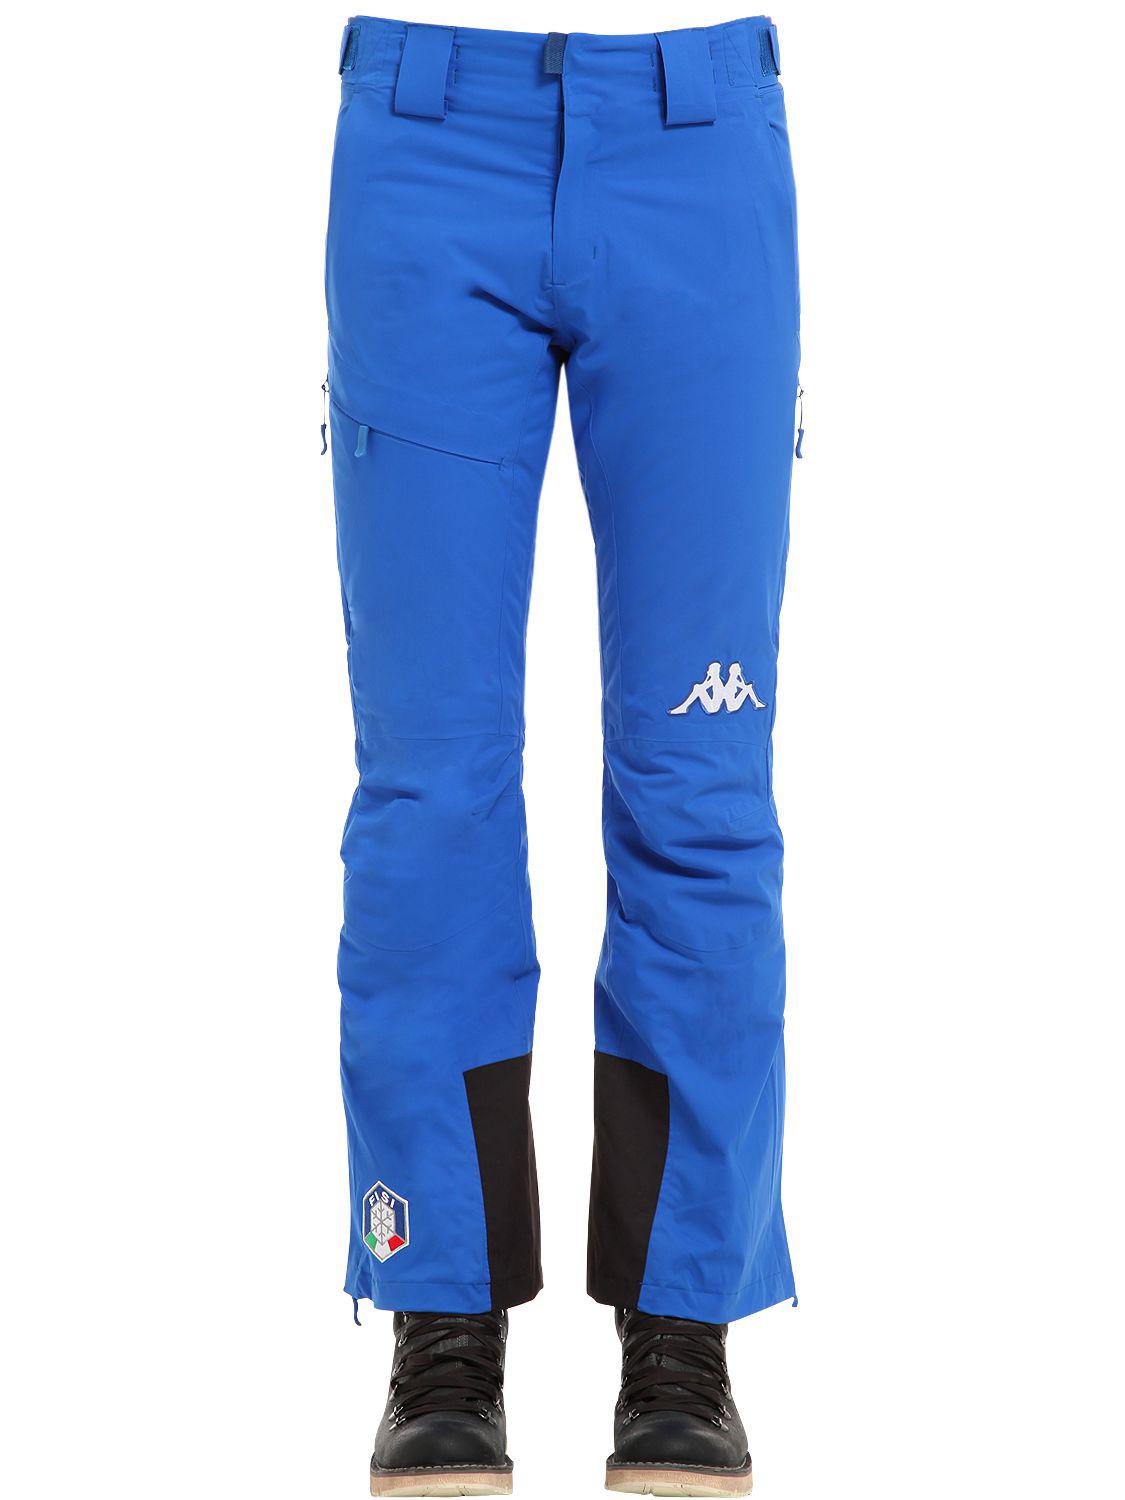 Kappa Fisi Italian Ski Team Pant in Blue for Men - Lyst